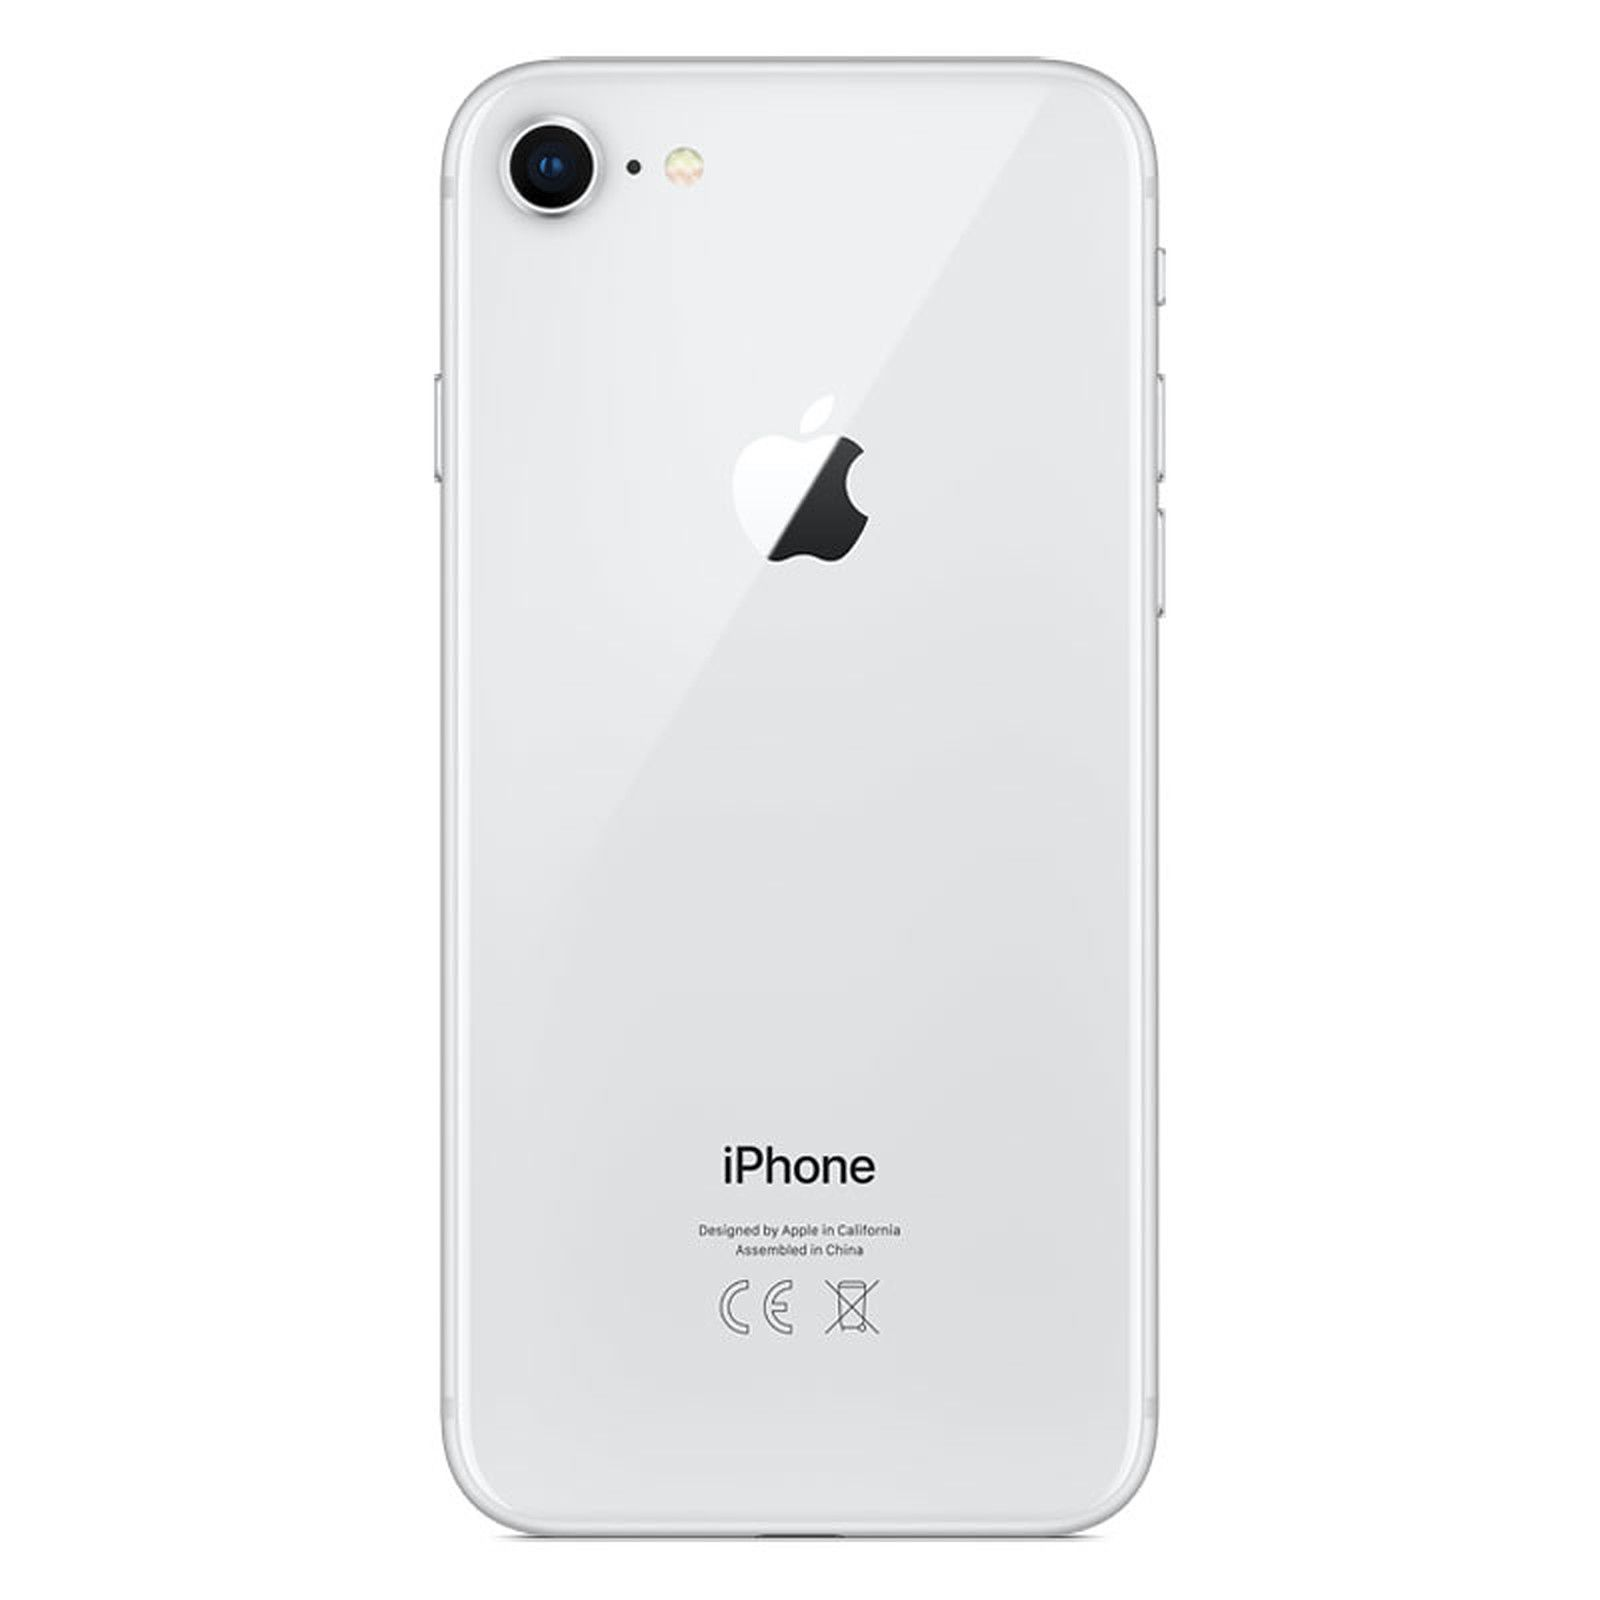 GB REFURBISHED iPhone GB 8 128 128 APPLE Silber (*)